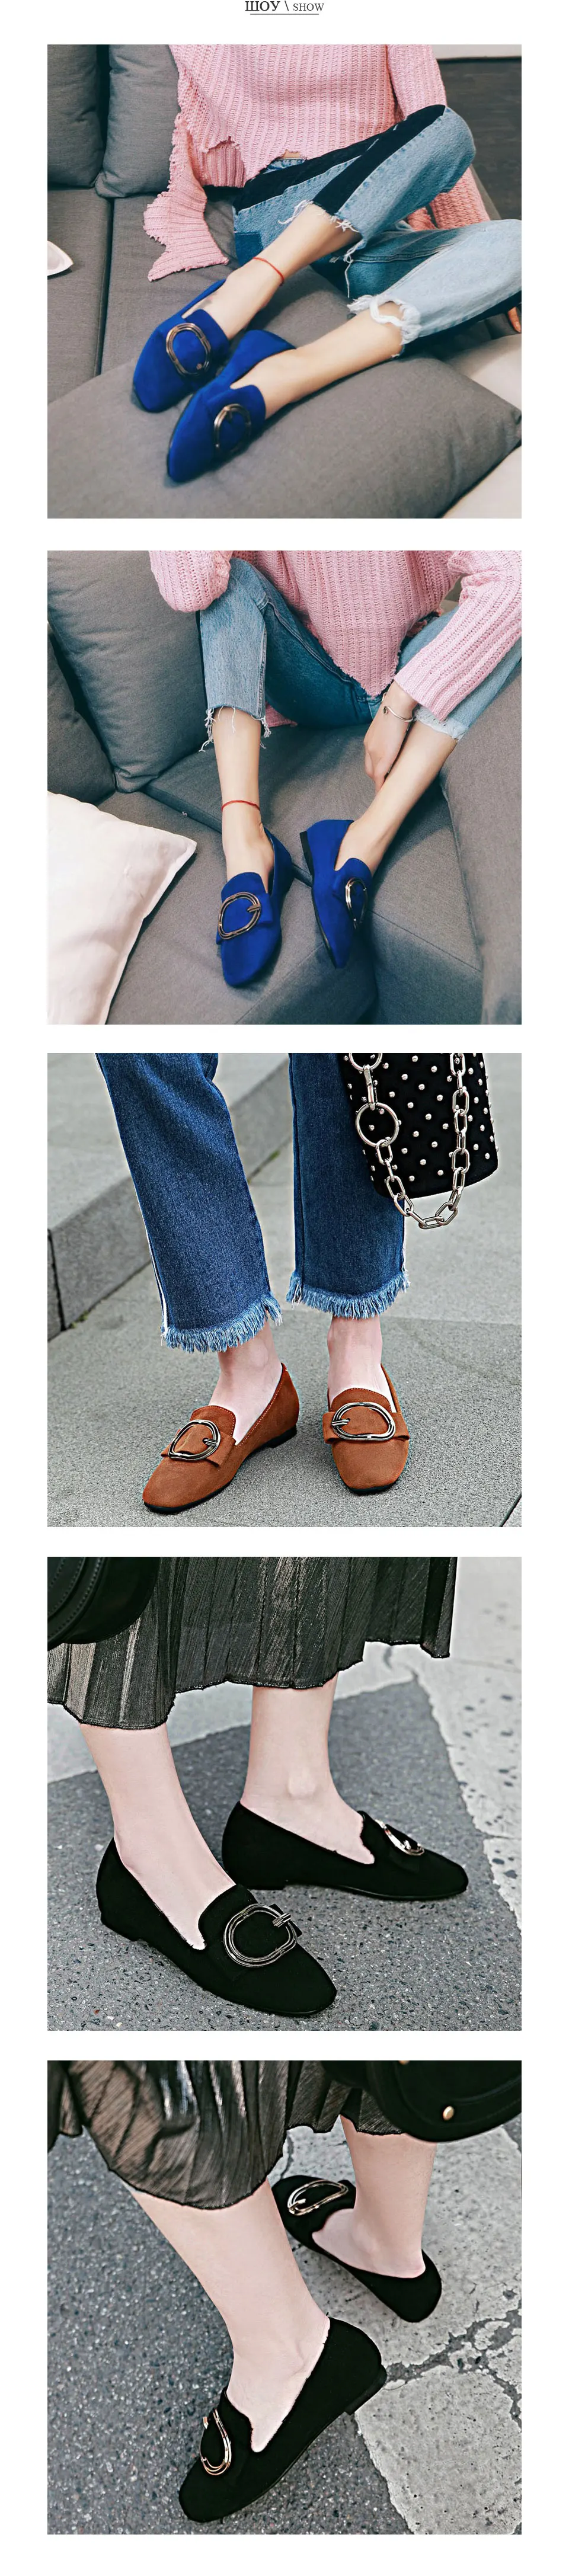 Fanyuan/; женские мокасины; повседневная обувь без застежки; туфли-лодочки с квадратным носком и пряжкой; весенние женские туфли на плоской подошве; цвет синий, коричневый; размеры 34-43